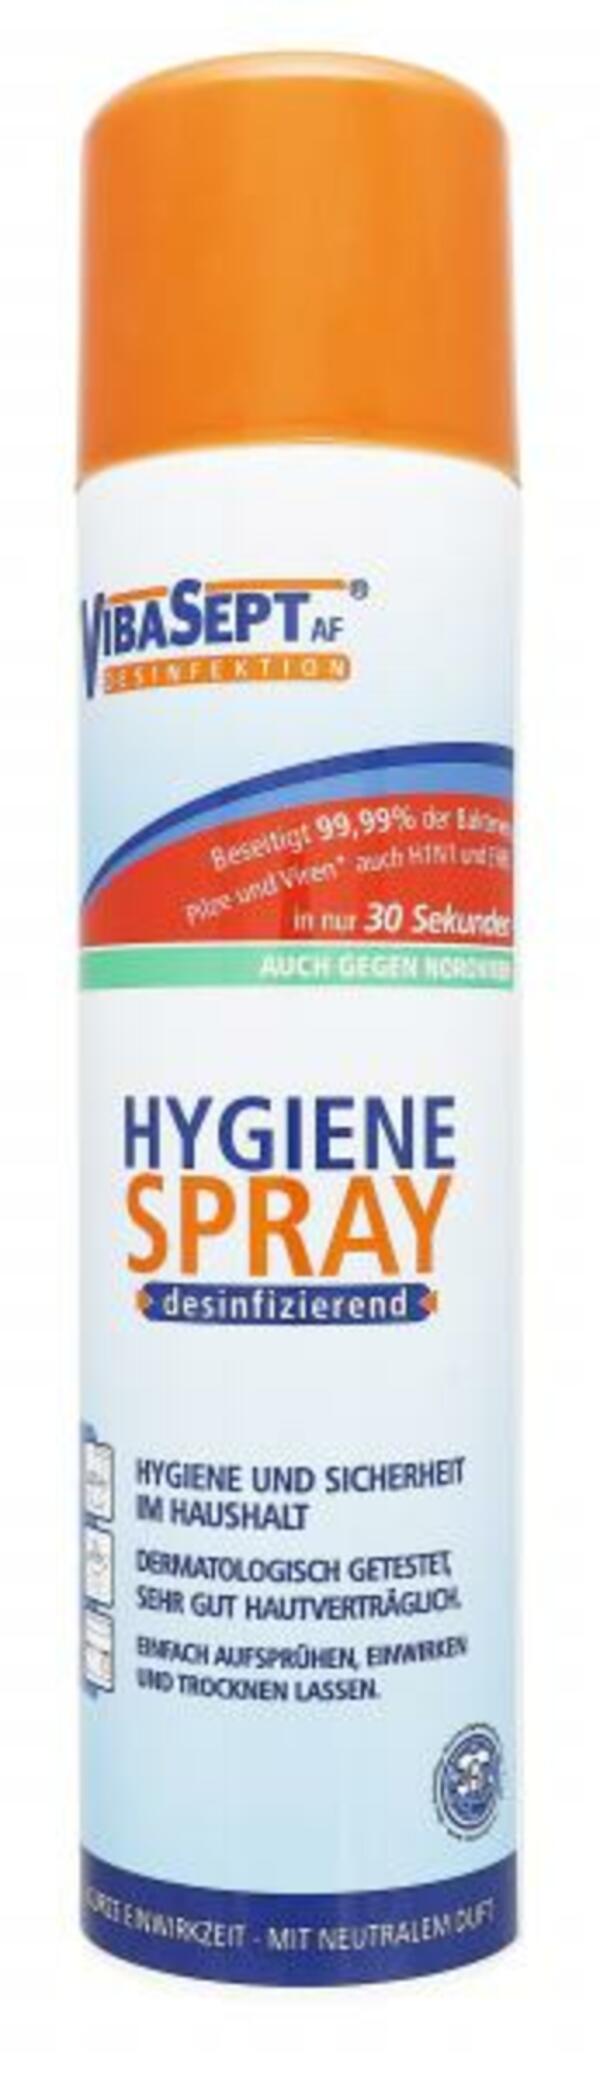 Bild 1 von VibaSept Hygiene Spray desinfizierend